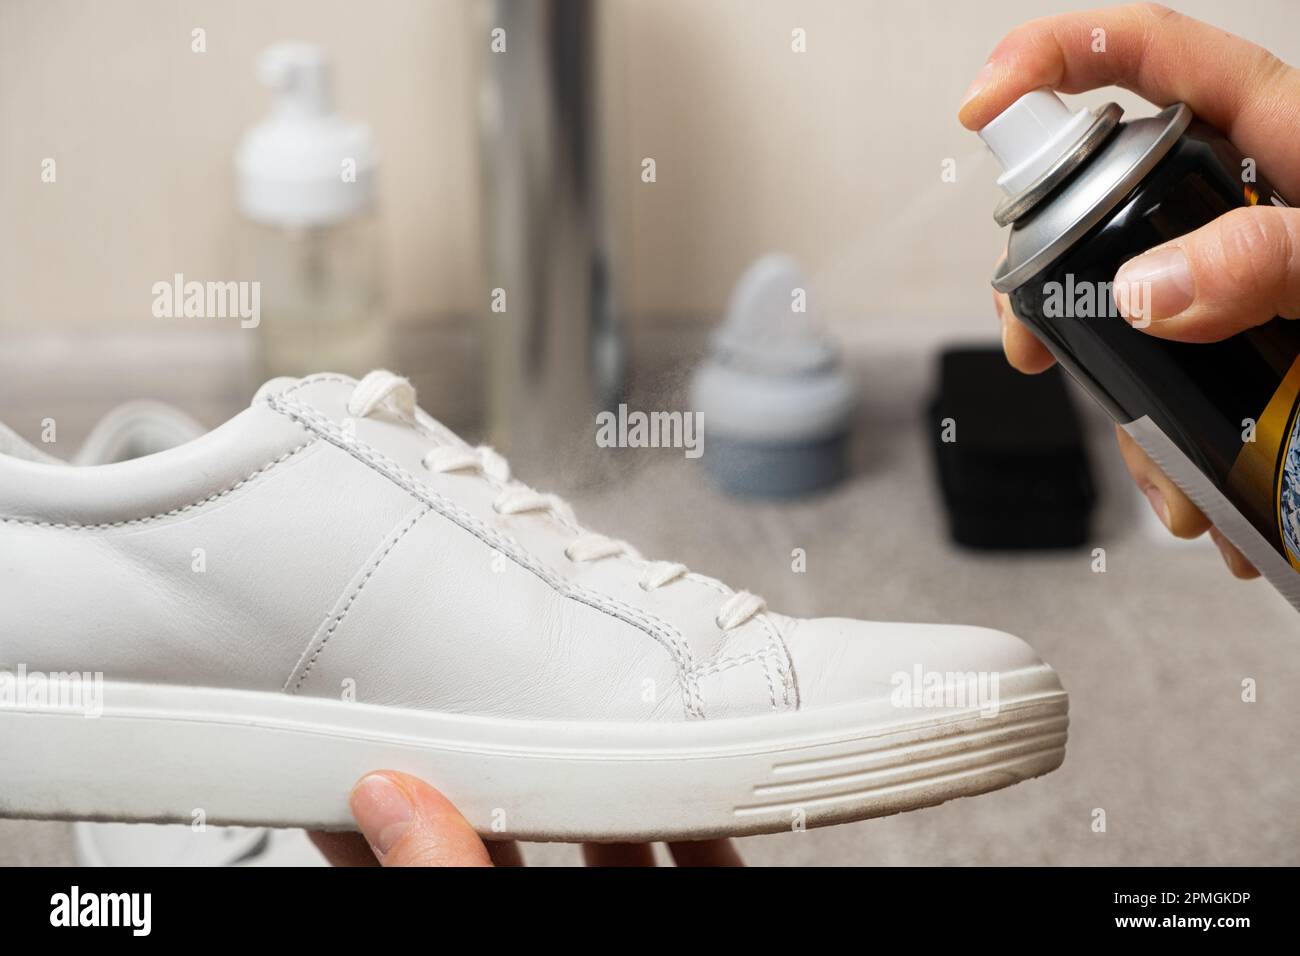 Applicare uno spray idrofobico idrorepellente alle sneaker bianche da donna. Protezione delle scarpe da umidità, sporco e odore sgradevole. Foto Stock